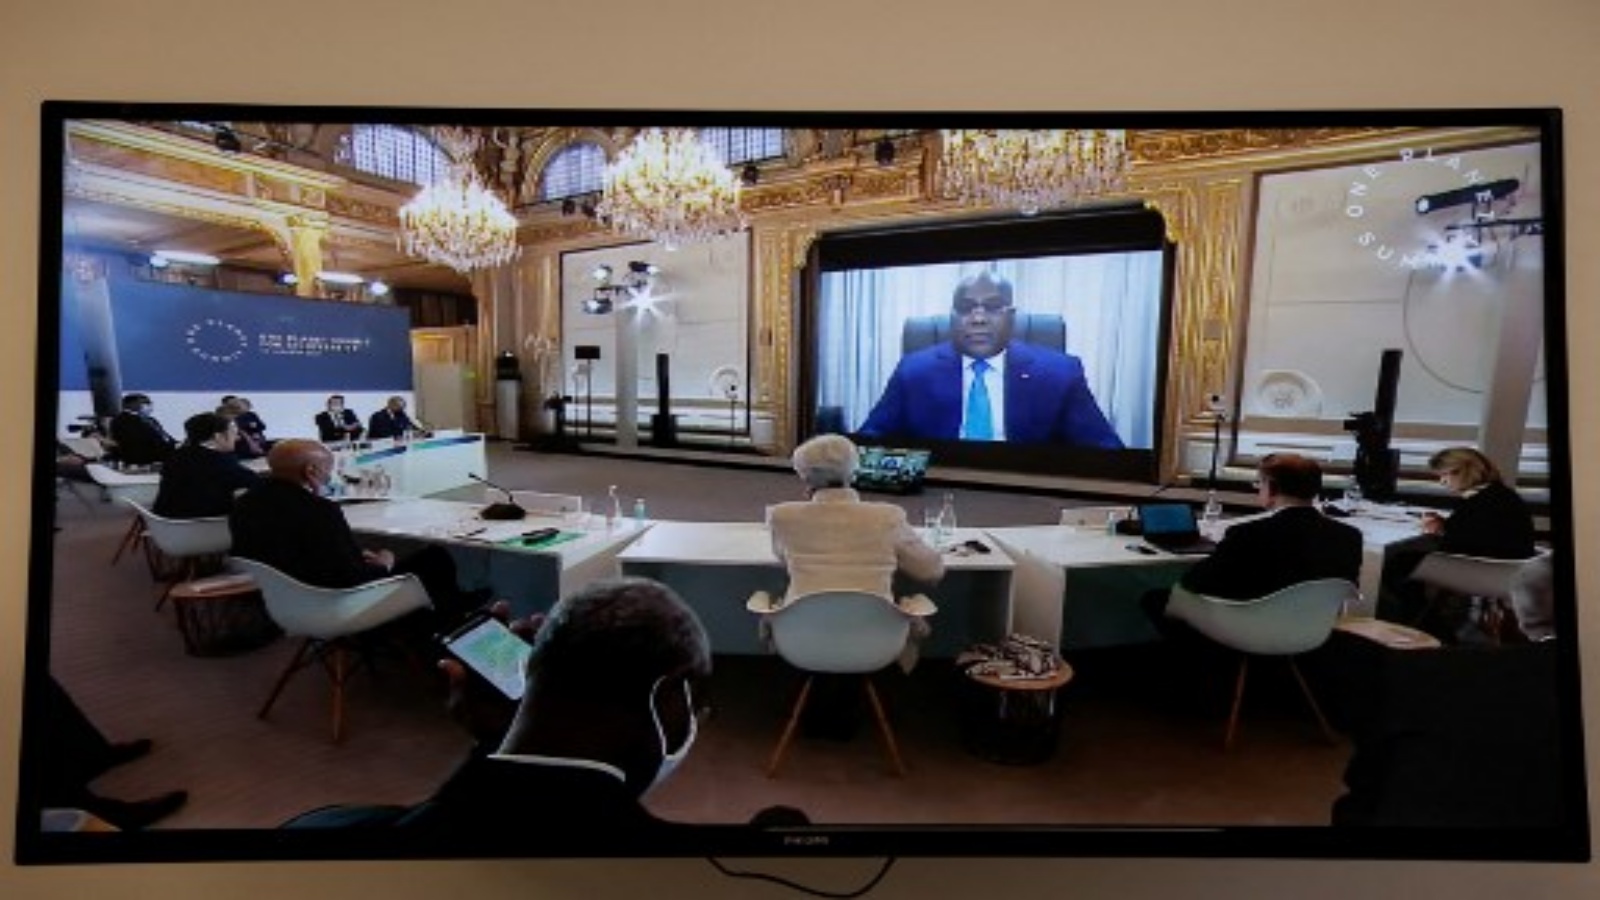 رئيس جمهورية الكونغو الديمقراطية فيليكس تشيسكيدي خلال اجتماع عبر الفيديو في قمة كوكب واحد ، وهي جزء من يوم الطبيعة العالمي ، في غرفة الاستقبال بقصر الإليزيه ، في باريس ، في 11 يناير 2021.